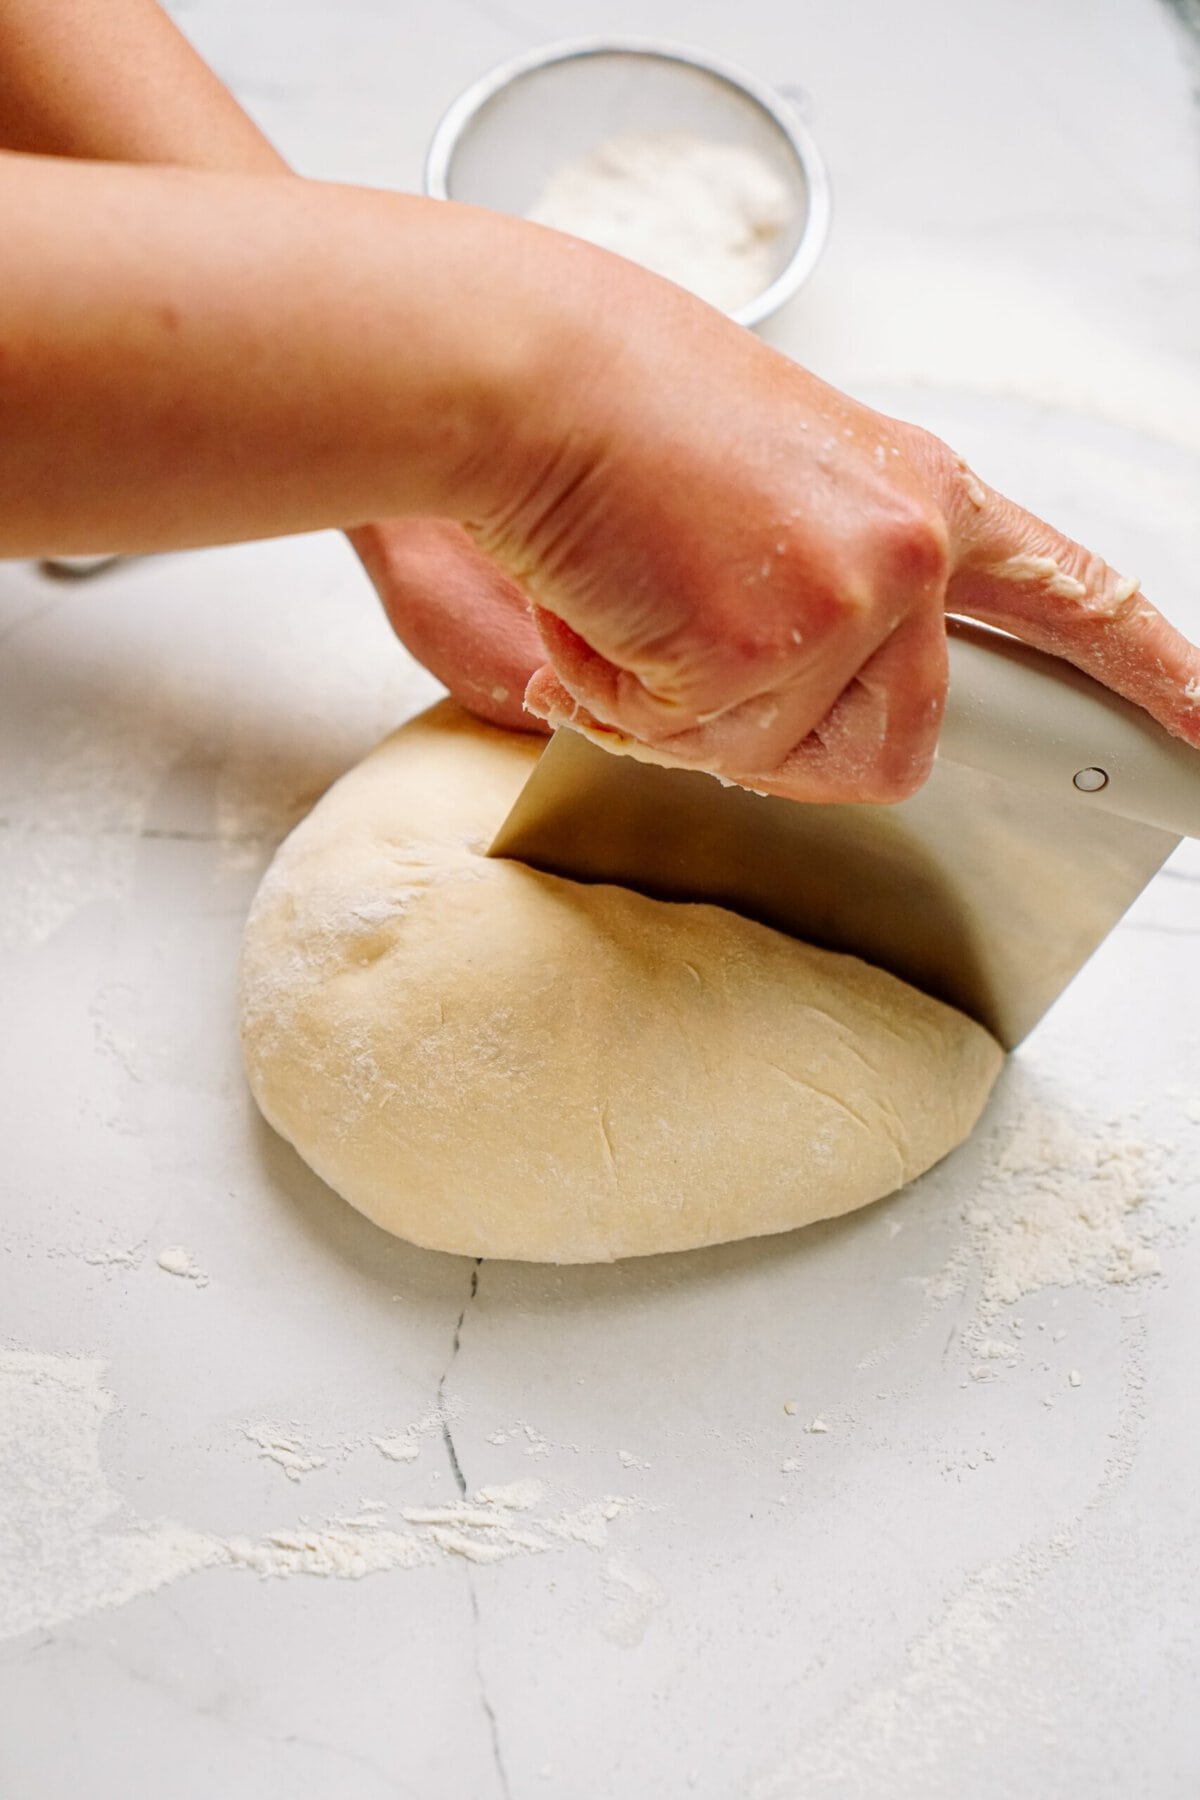 a person dividing out dough